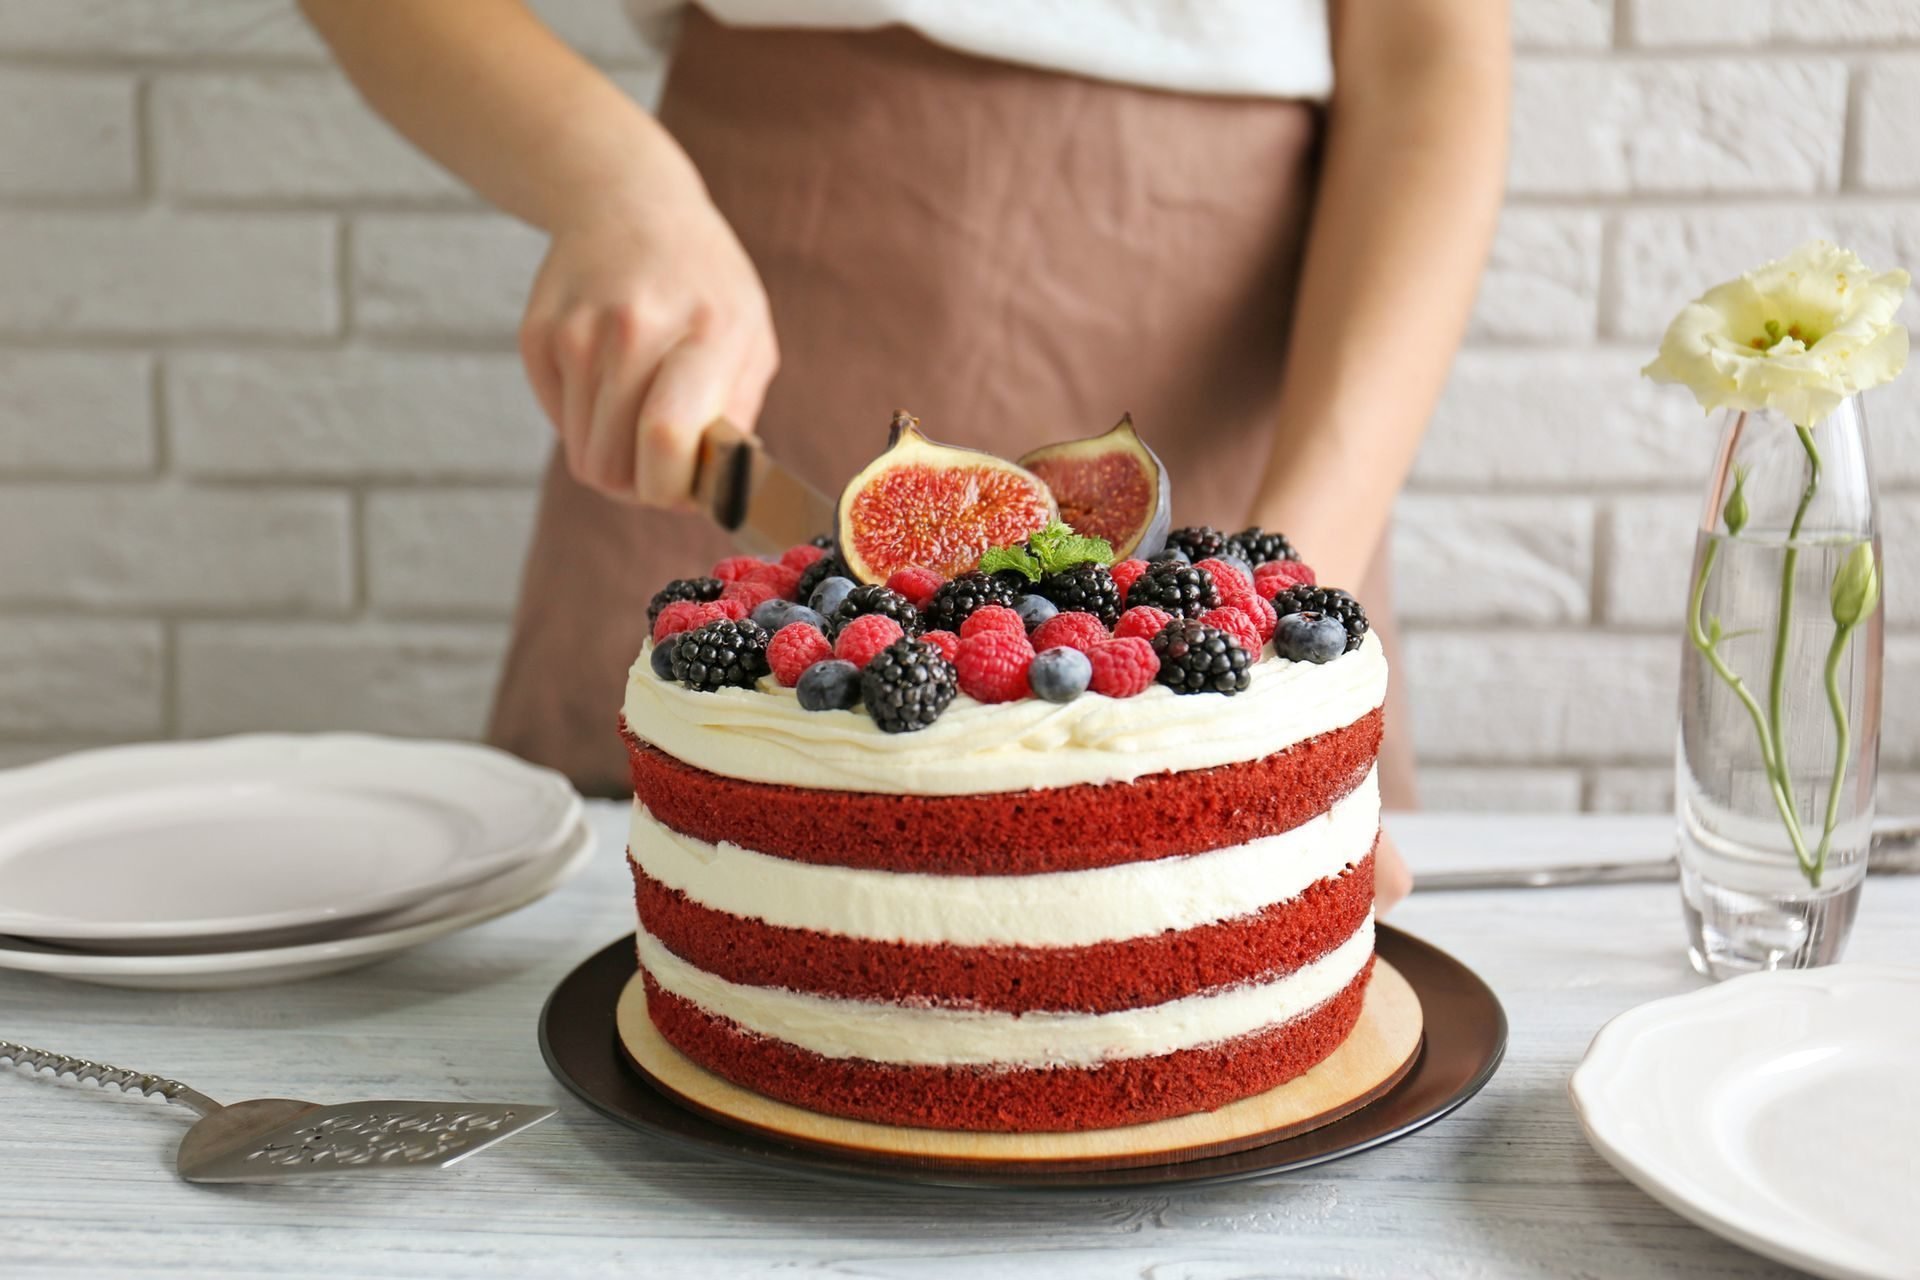 Печь торт дома